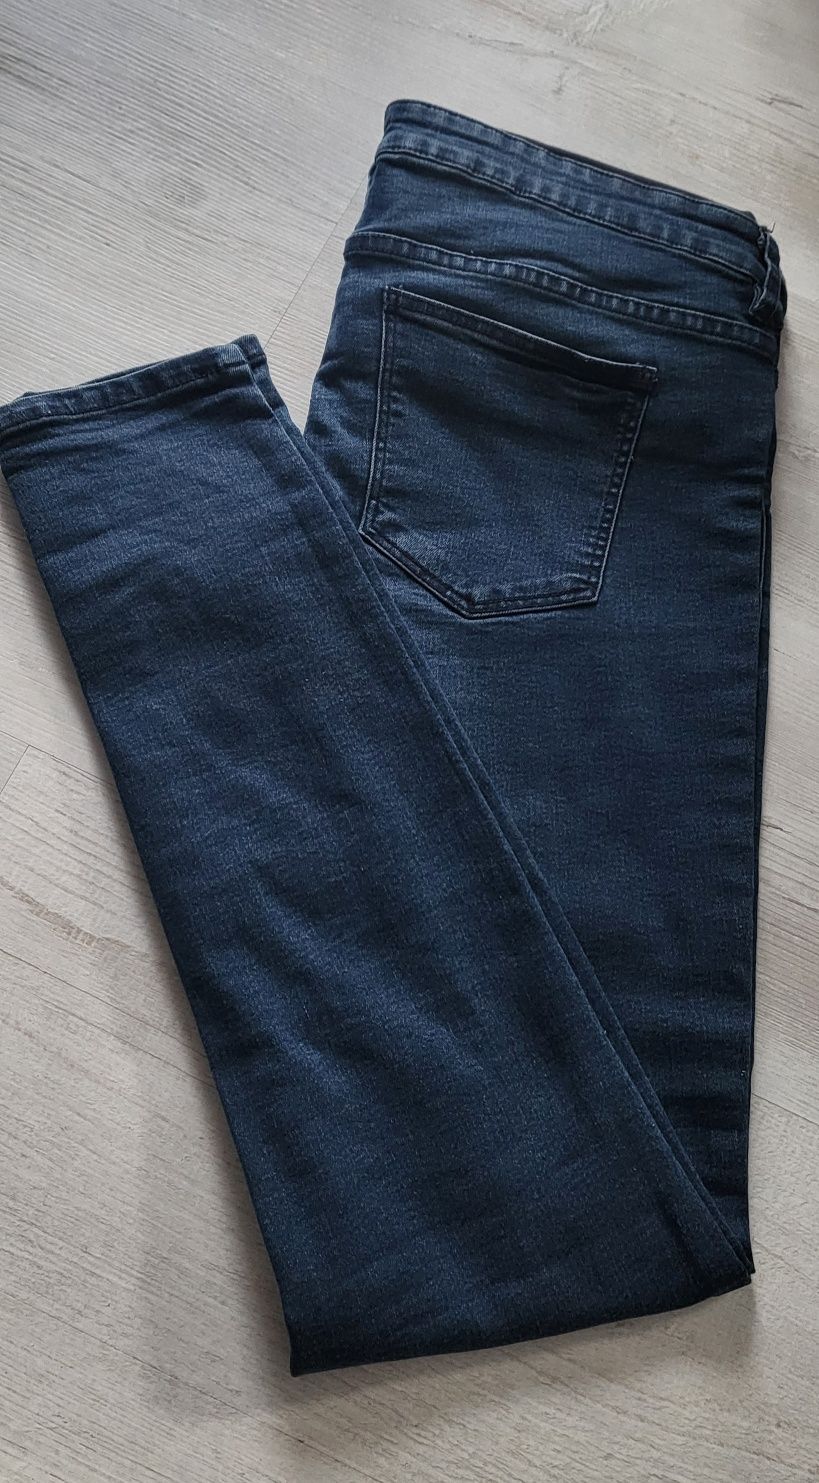 Spodnie ciążowe jeans r. 38 M